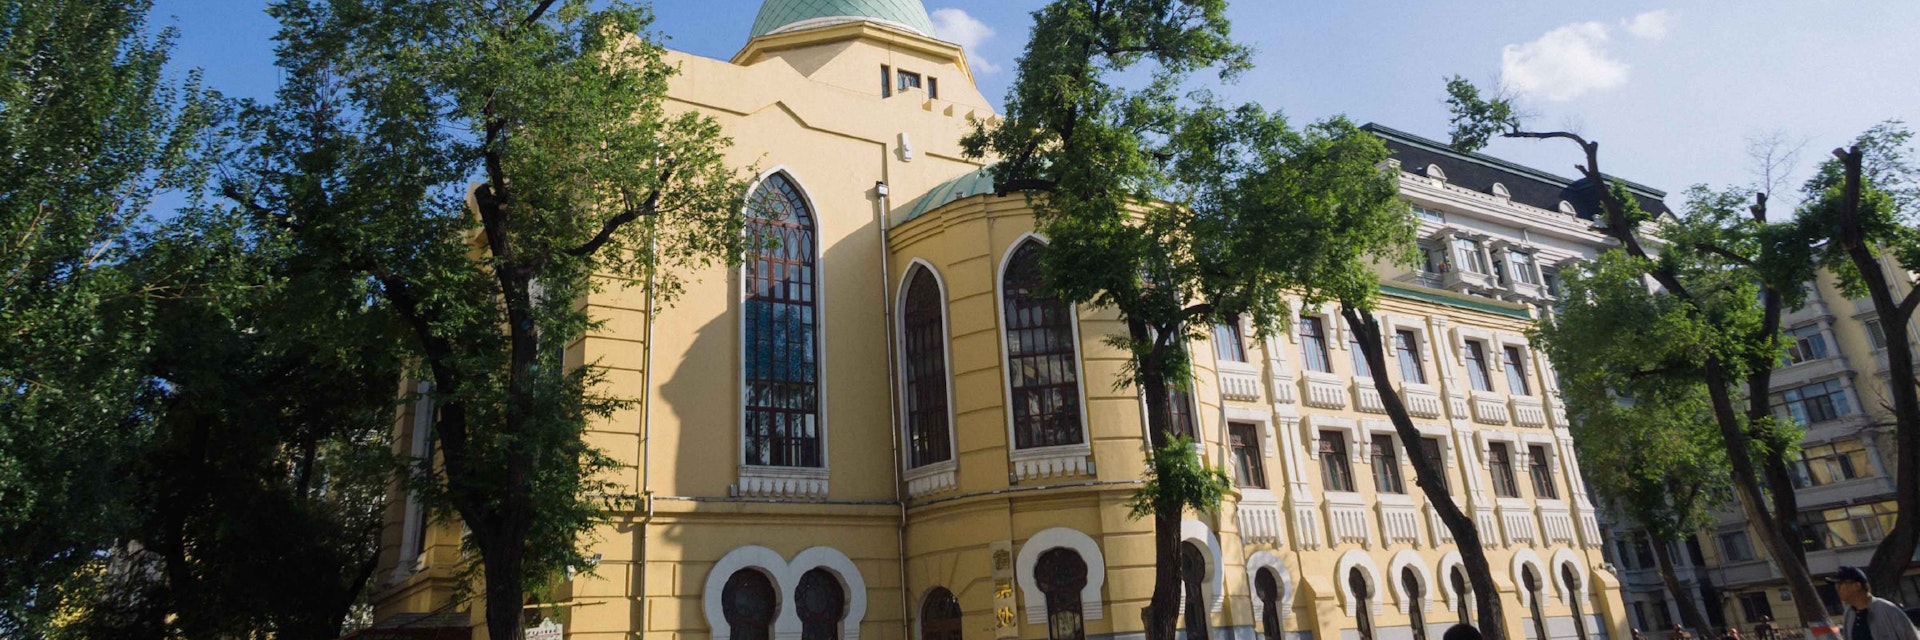 Main Synagogue exterior